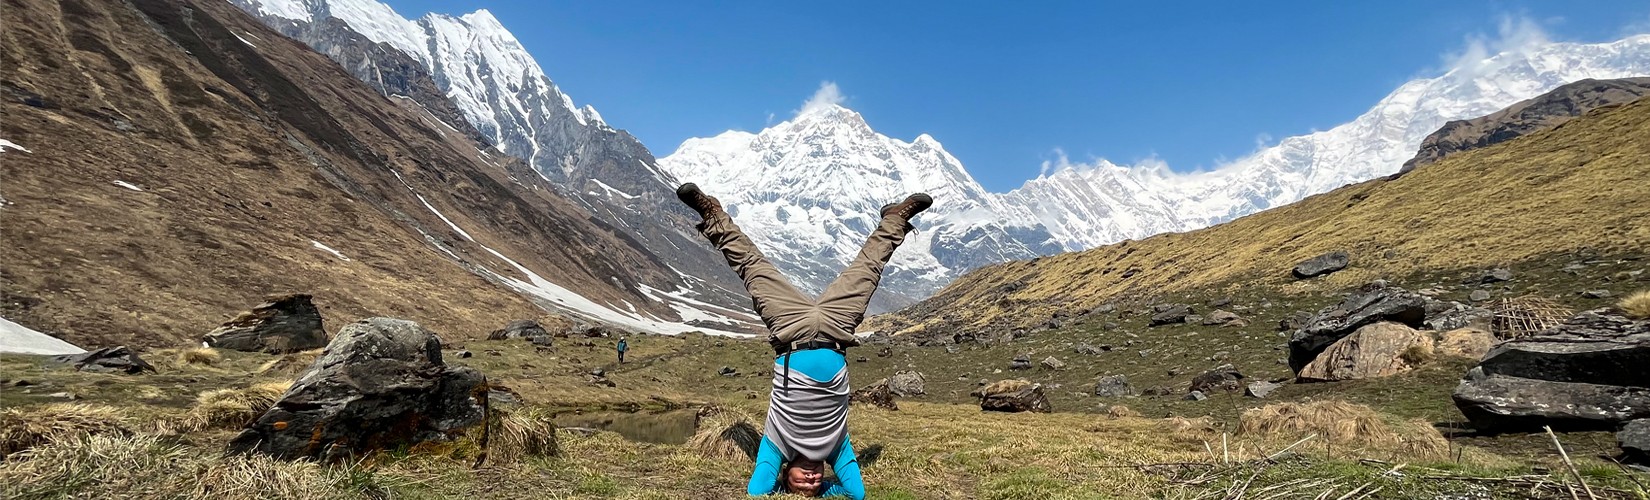 Annapurna Base Camp Yoga Trip